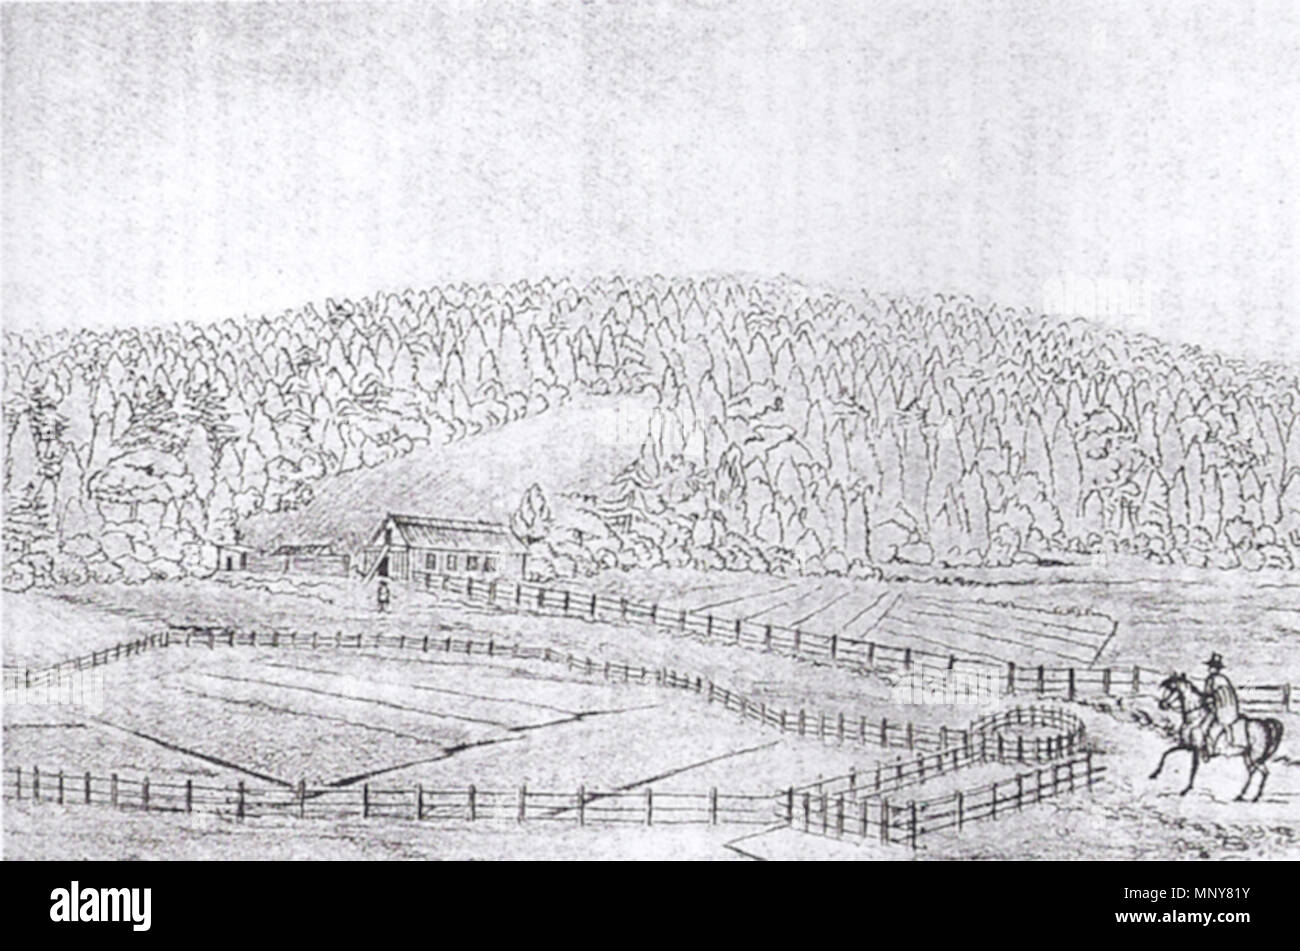 . Skizze des Chernykh Ranch von I. G. Voznesenskii, 1841. Nur bekannte Ansicht eines russischen Farm in Kalifornien. 1841. I. G. Voznesenskii 1245 Voznesenskii - Skizze des Chernykh Ranch (1841) Stockfoto